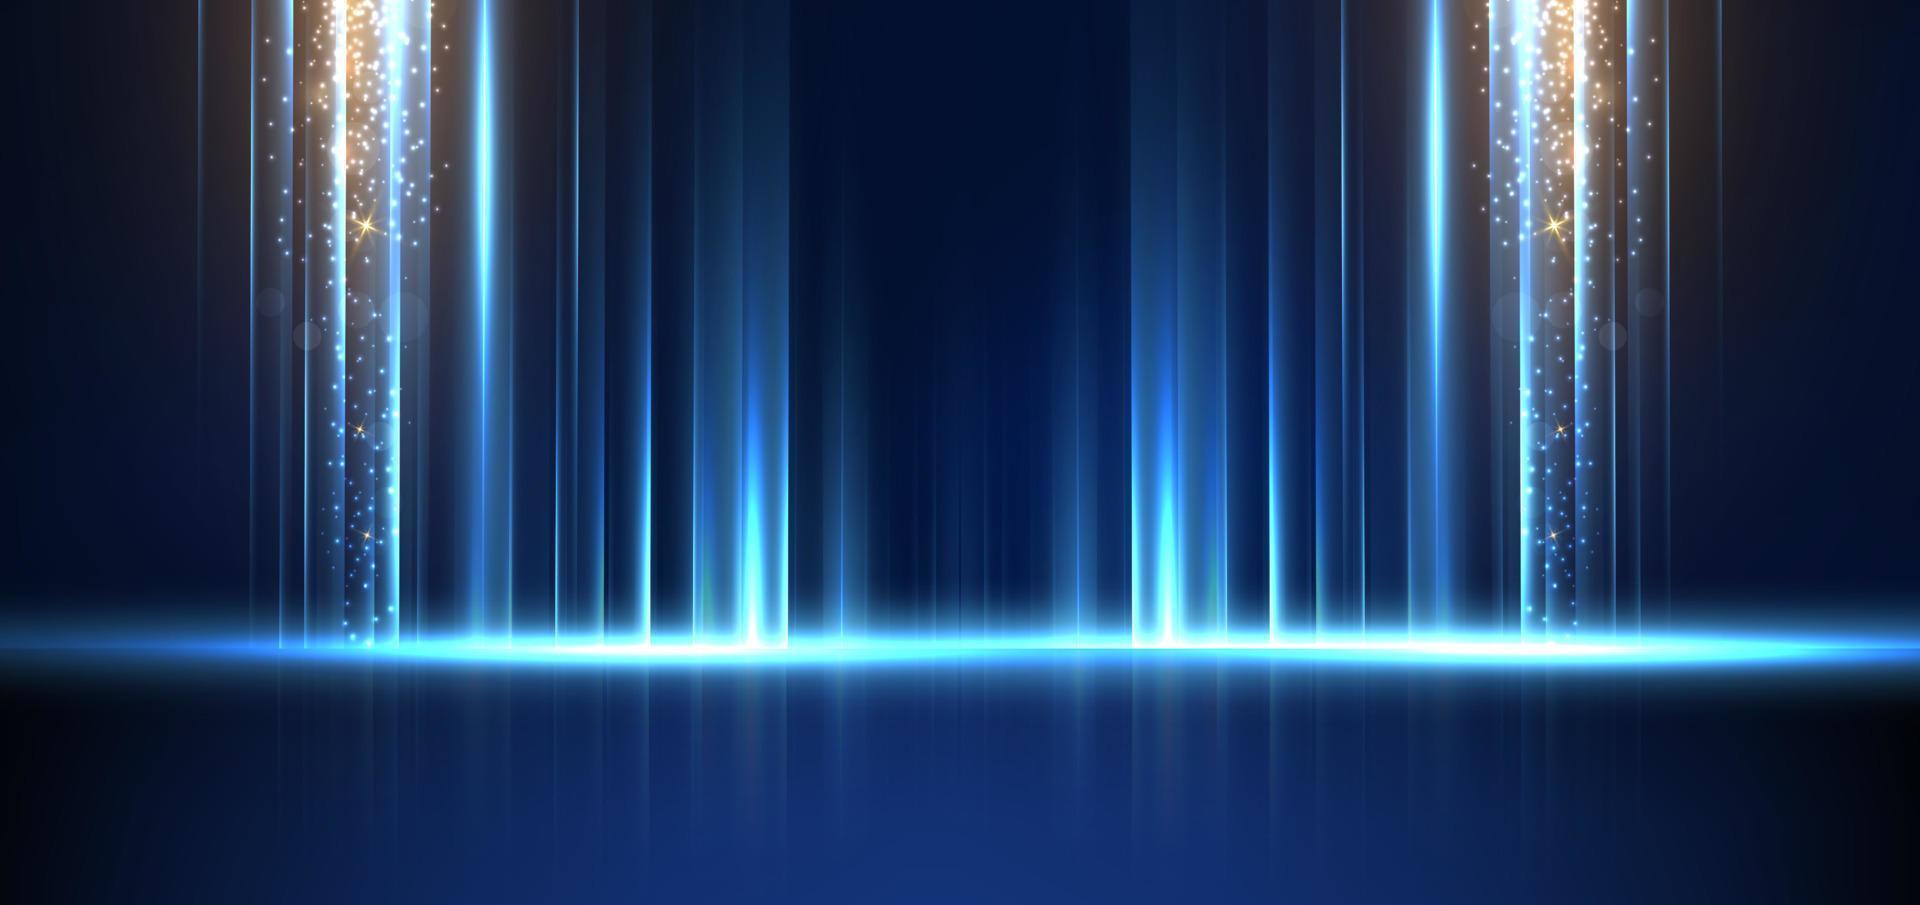 tecnologia abstrata futurista luz azul listra linhas verticais luz sobre fundo azul com brilho de efeito de iluminação de ouro. vetor